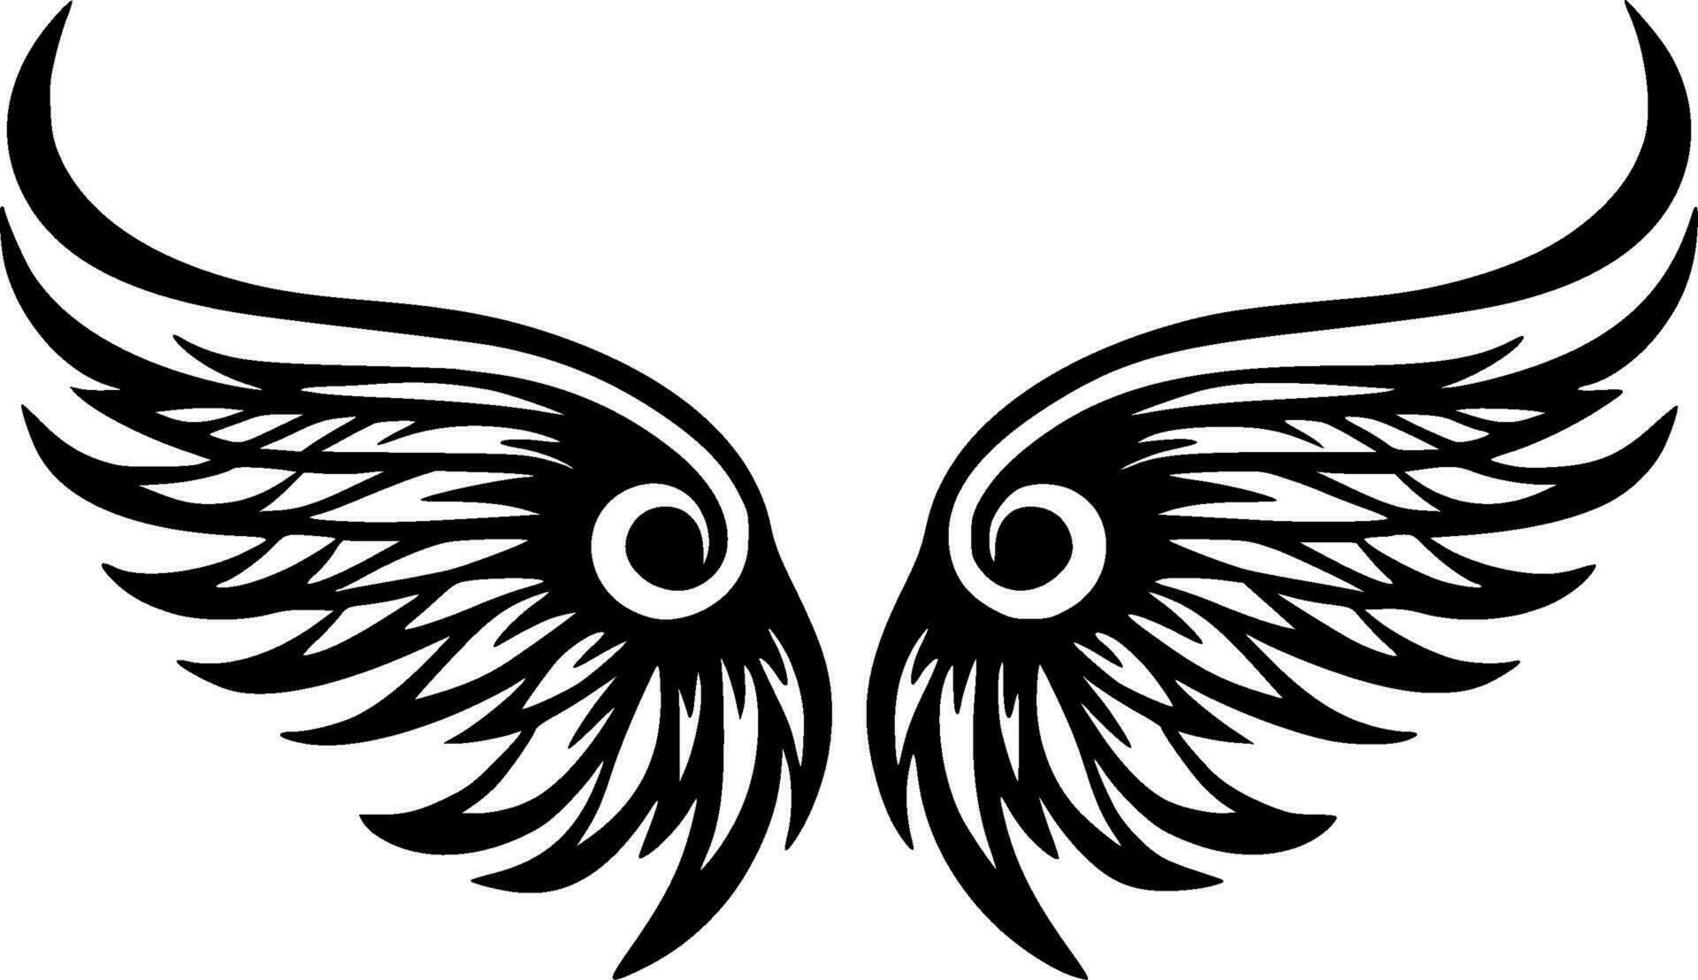 Vleugels, zwart en wit vector illustratie